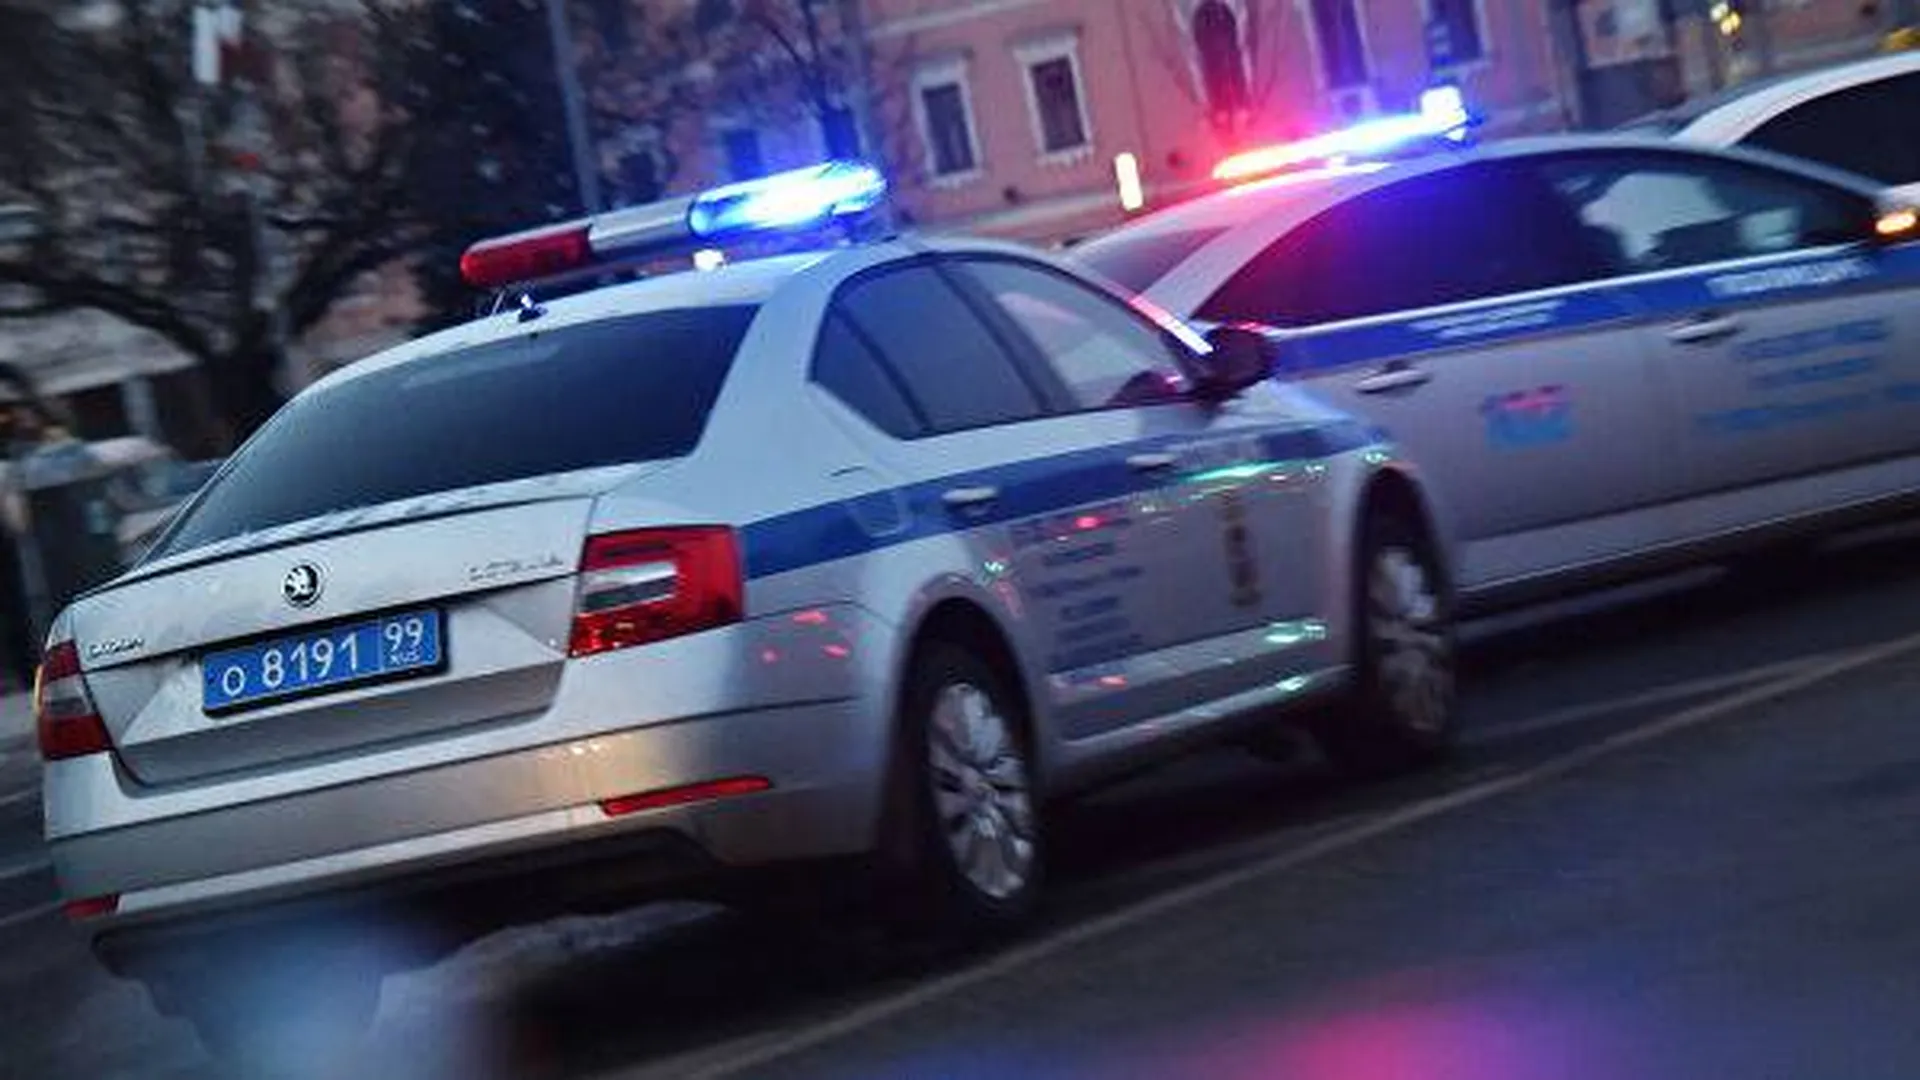 Напавший на полицейских подросток не стоял на учете из-за склонности к экстремизму — МВД Татарстана